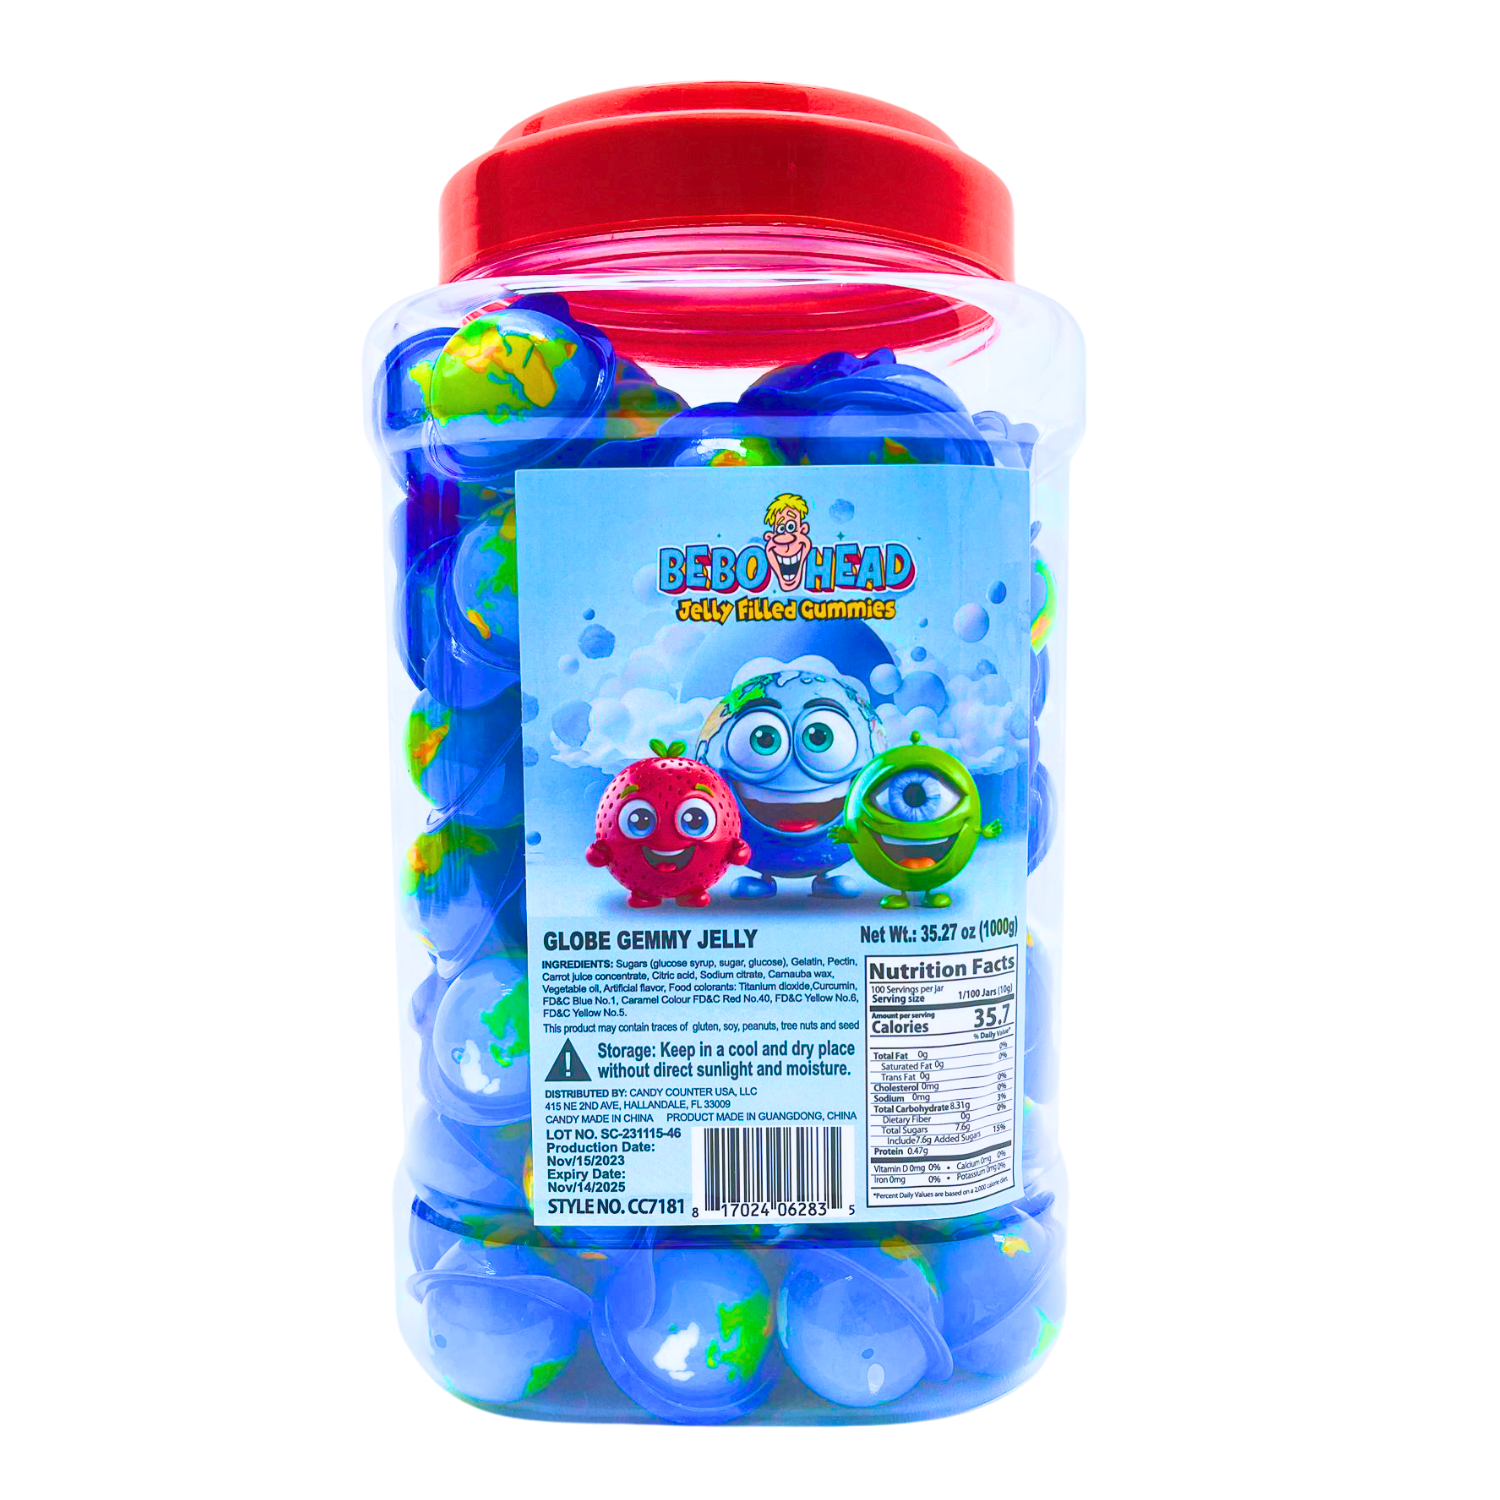 Globe Gummy Jelly - 2.2 Pounds